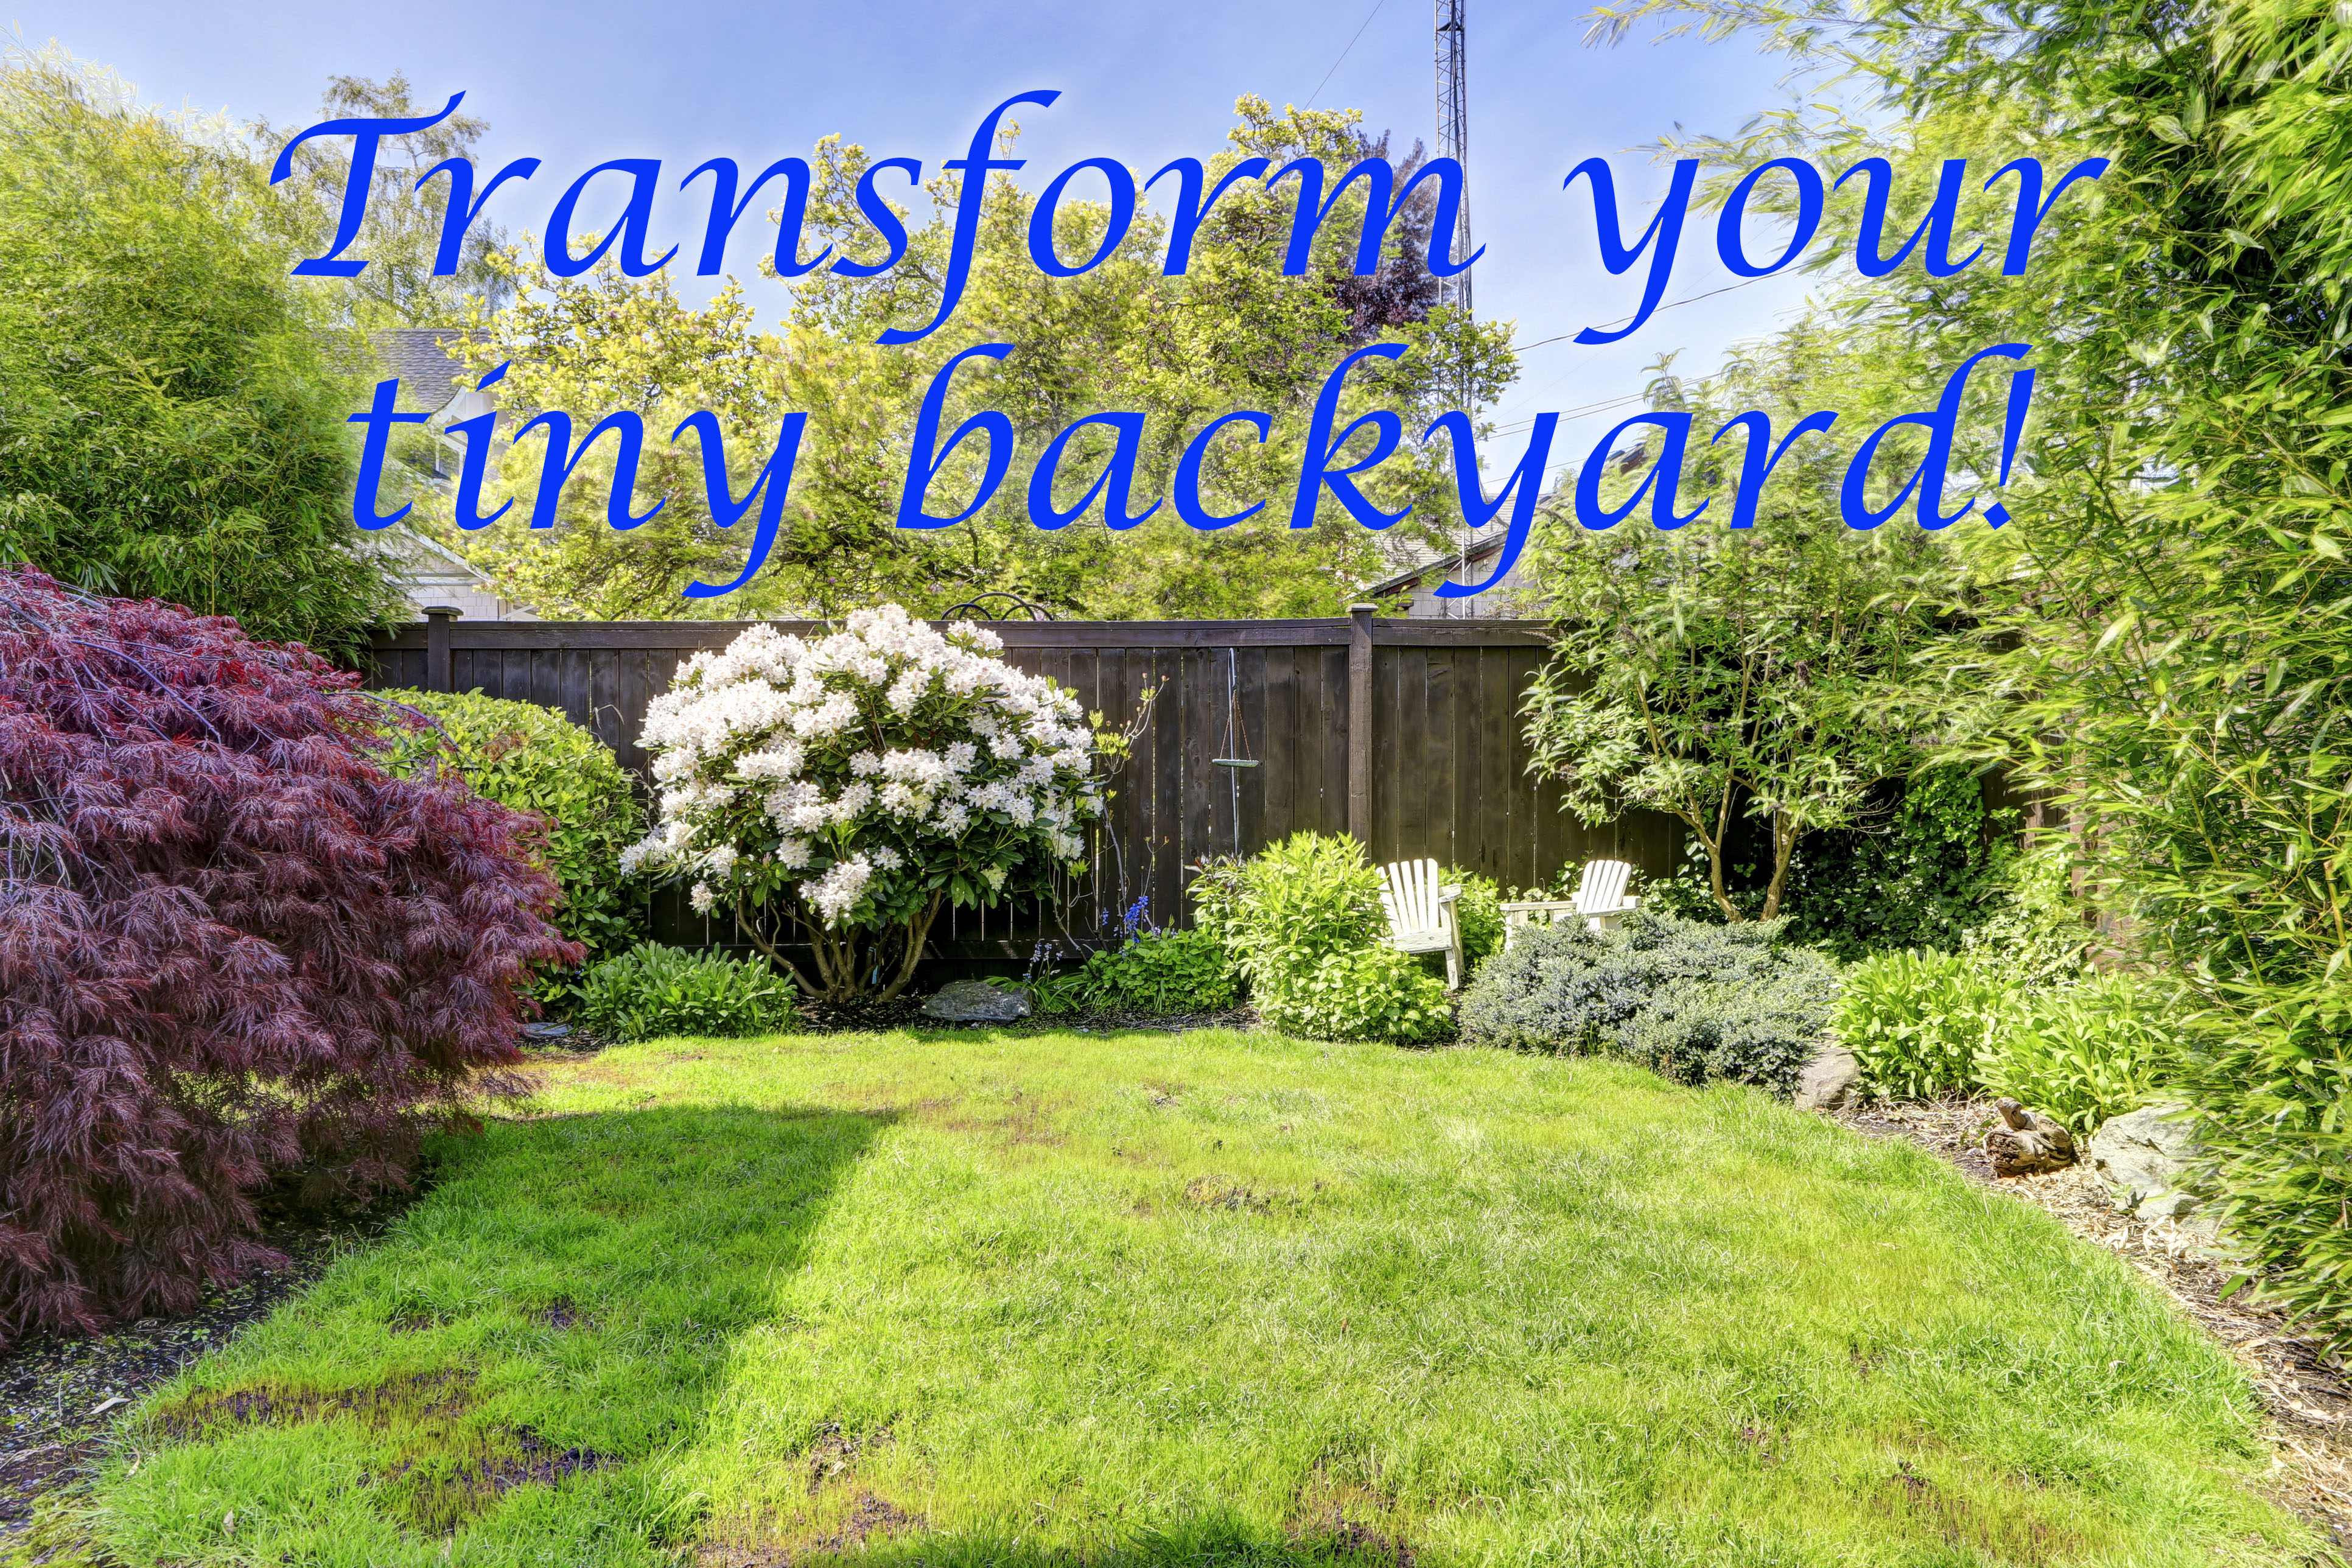 Landscaping Small Backyard